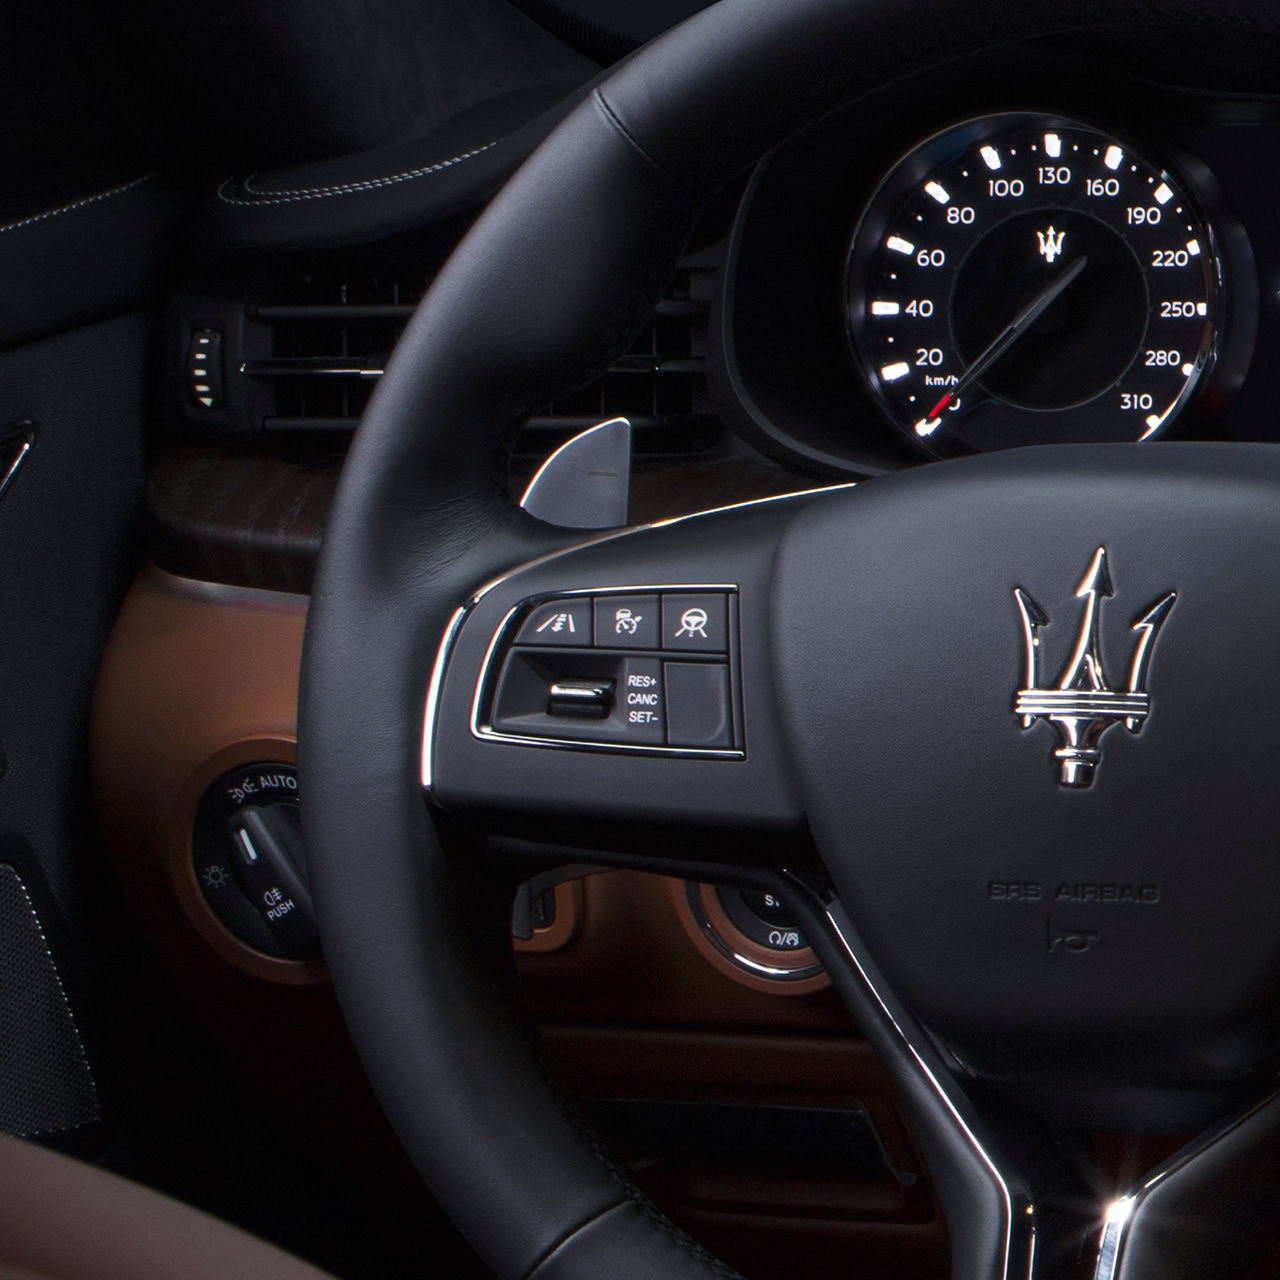 Sistema de asistencia en el volante del sedán Maserati Quattroporte